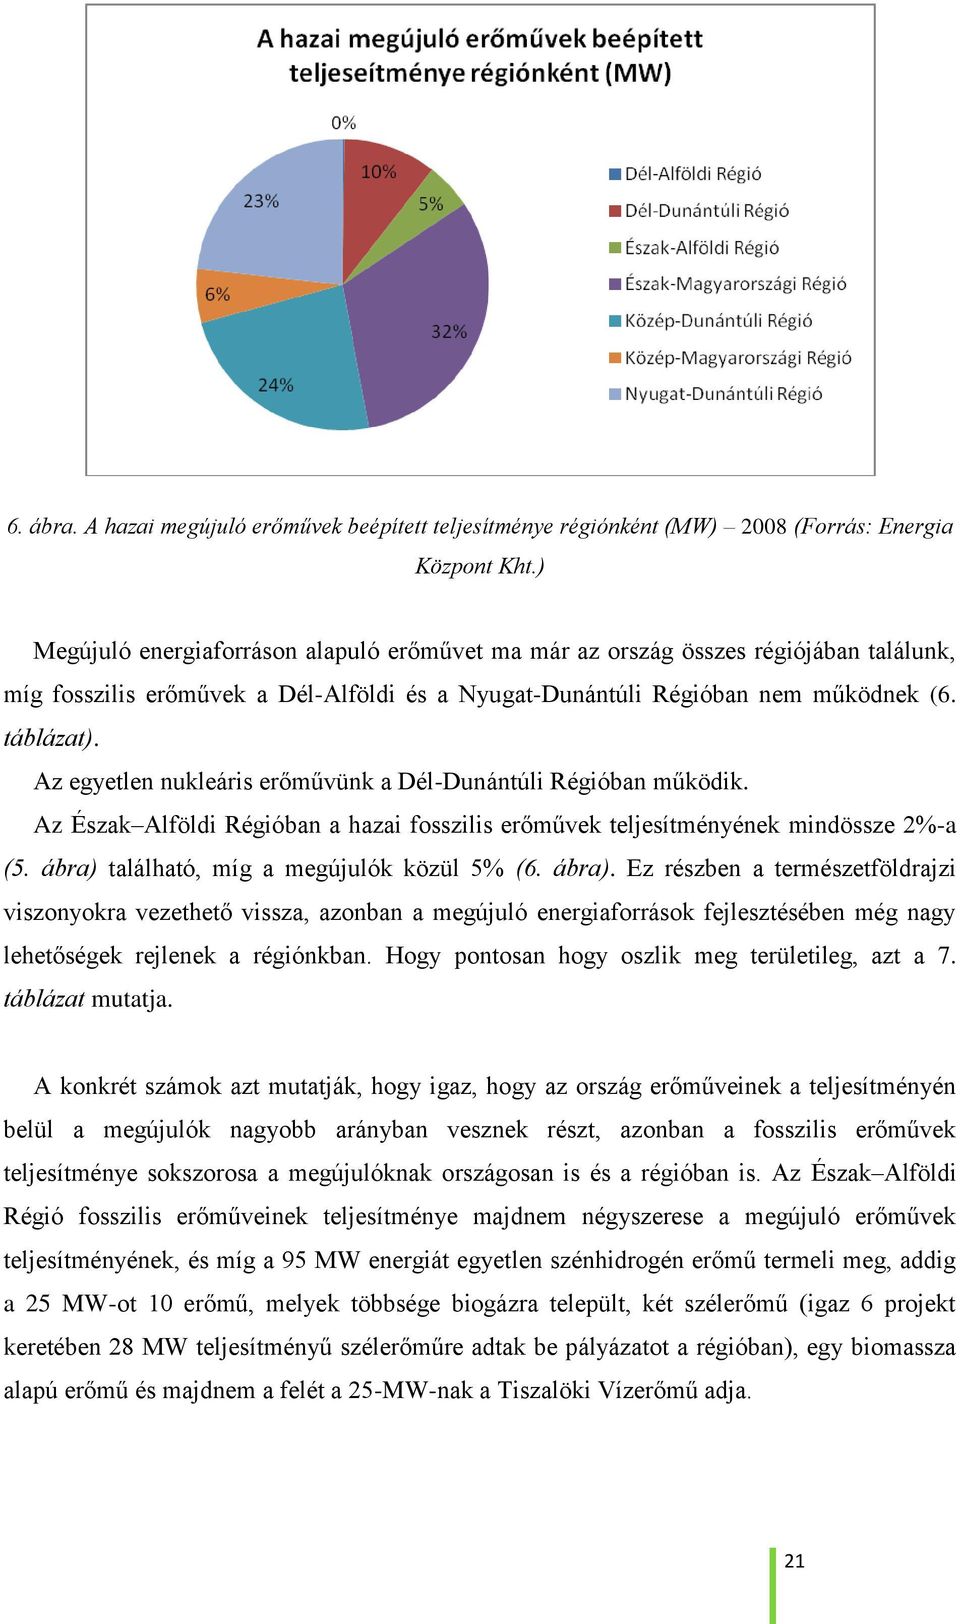 Az egyetlen nukleáris erőművünk a Dél-Dunántúli Régióban működik. Az Észak Alföldi Régióban a hazai fosszilis erőművek teljesítményének mindössze 2%-a (5. ábra) található, míg a megújulók közül 5% (6.